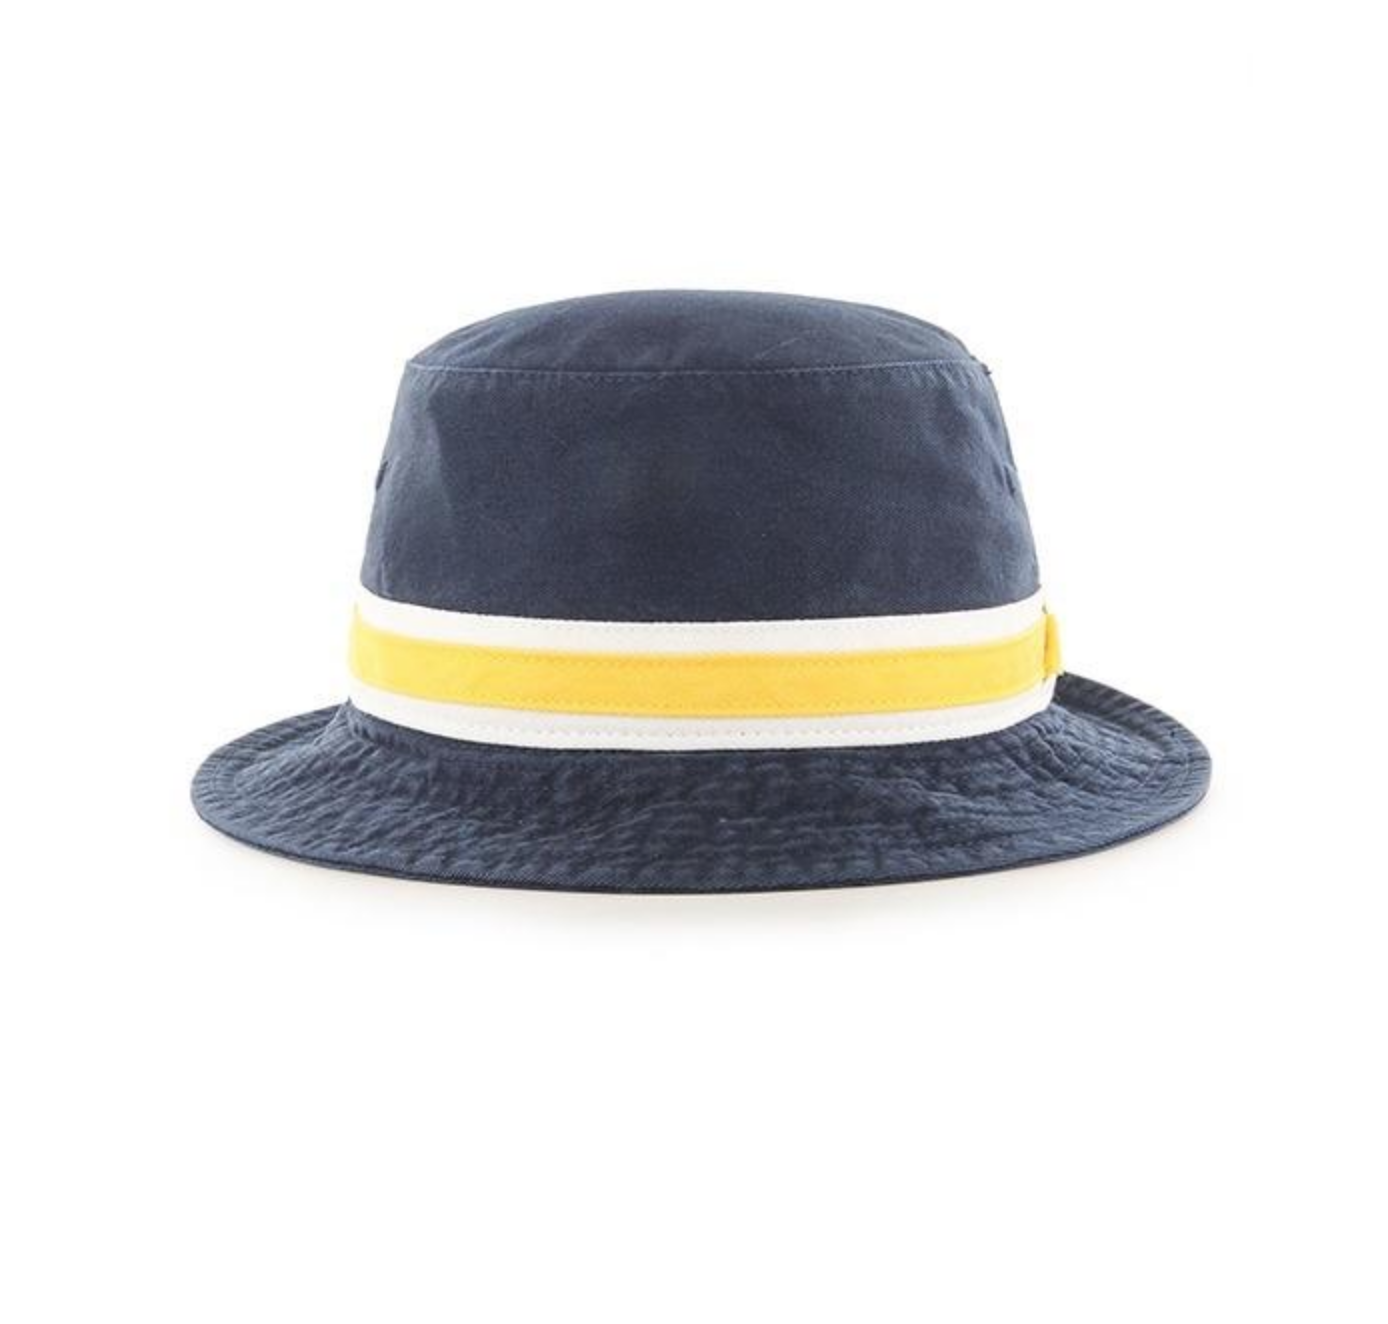 NRL bucket hat - Headwear-Bucket : All Out Co. - 47 Brand